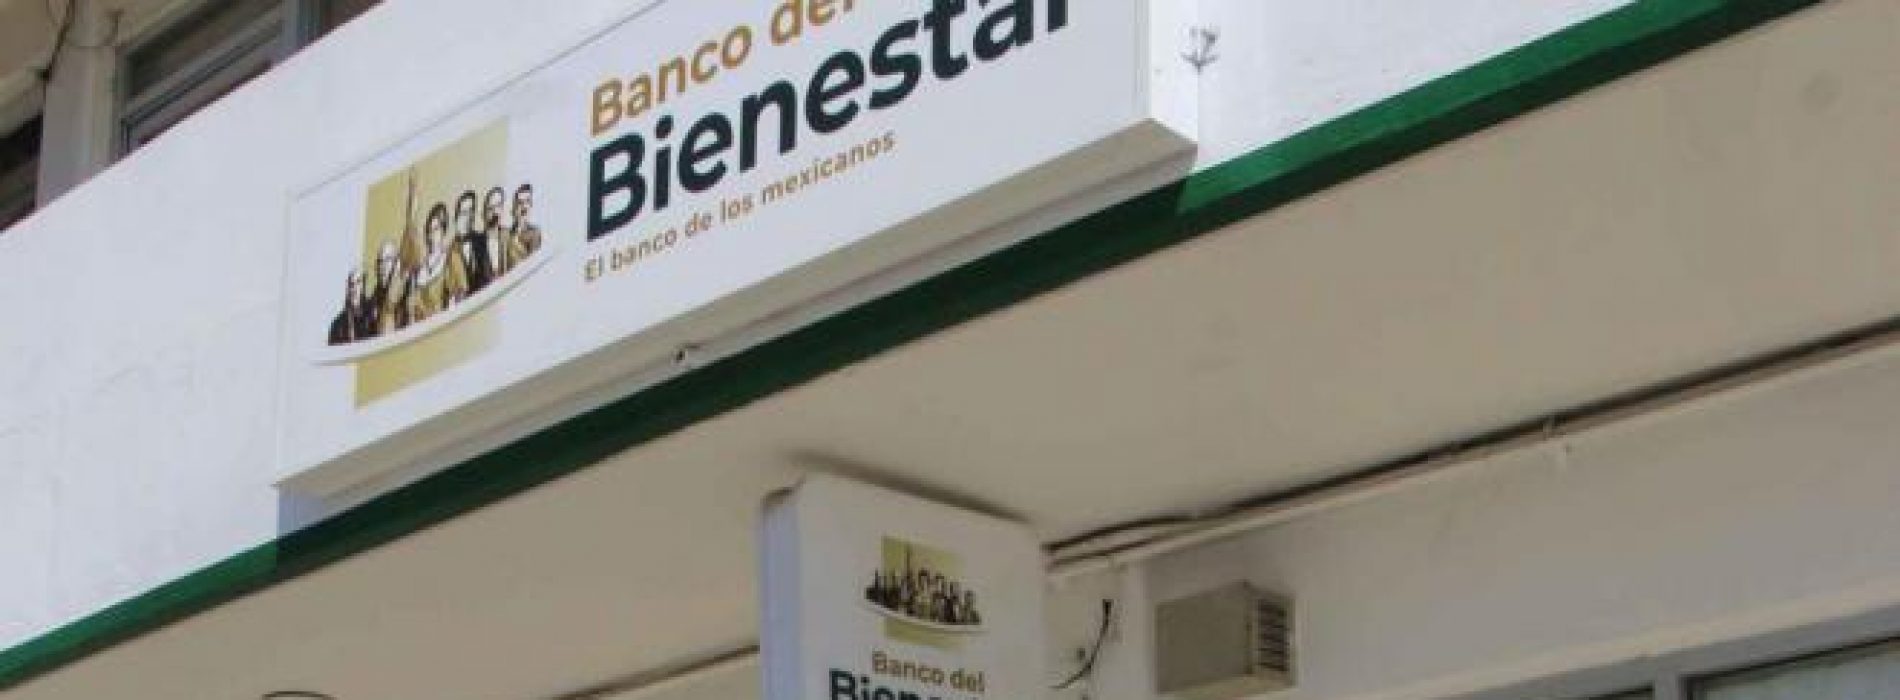 Tendrá Oaxaca más bancos Bienestar